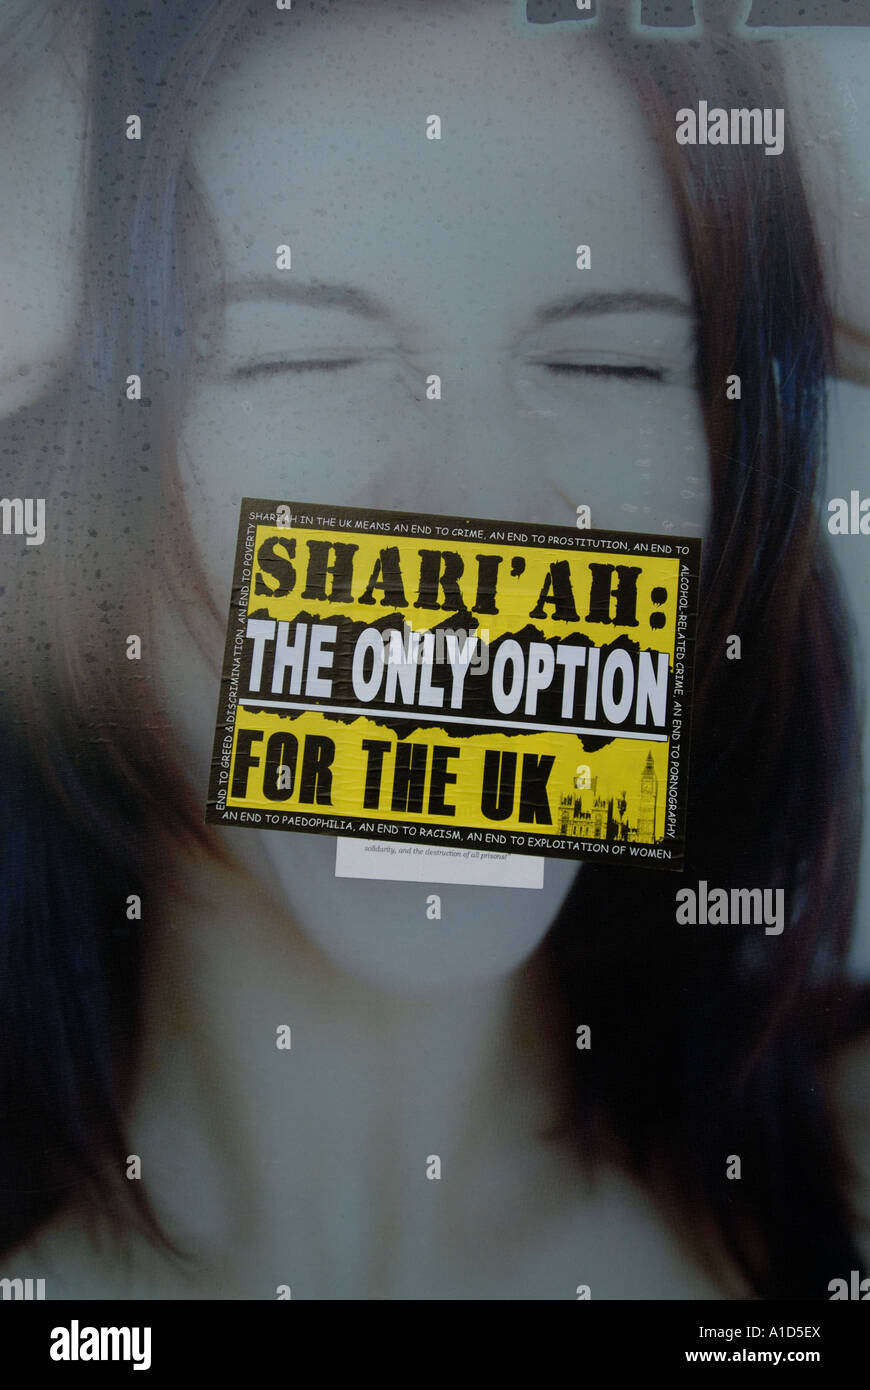 Diciembre de 2006 Londres Hackney pegatina diciendo la Sharia, la única opción para el Reino Unido pegada al anuncio de champú anticaspa Foto de stock